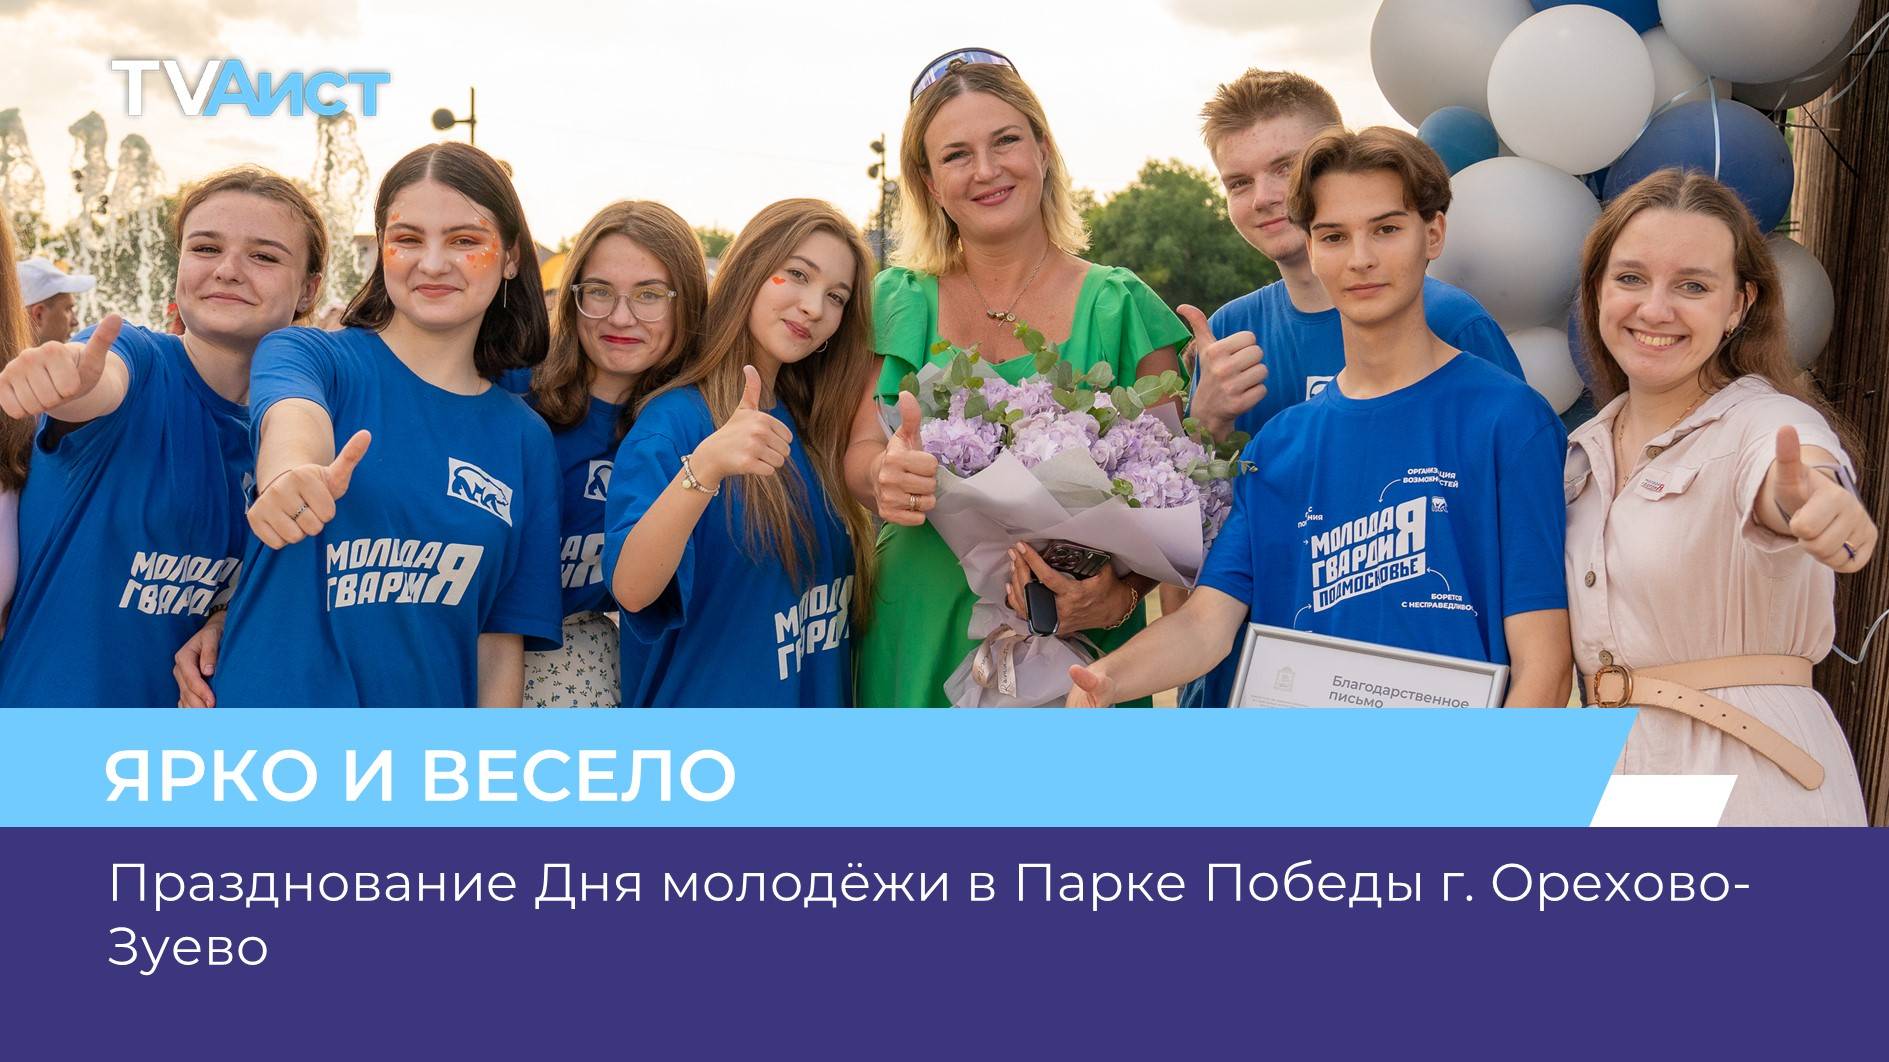 Празднование Дня молодёжи в Парке Победы г. Орехово-Зуево